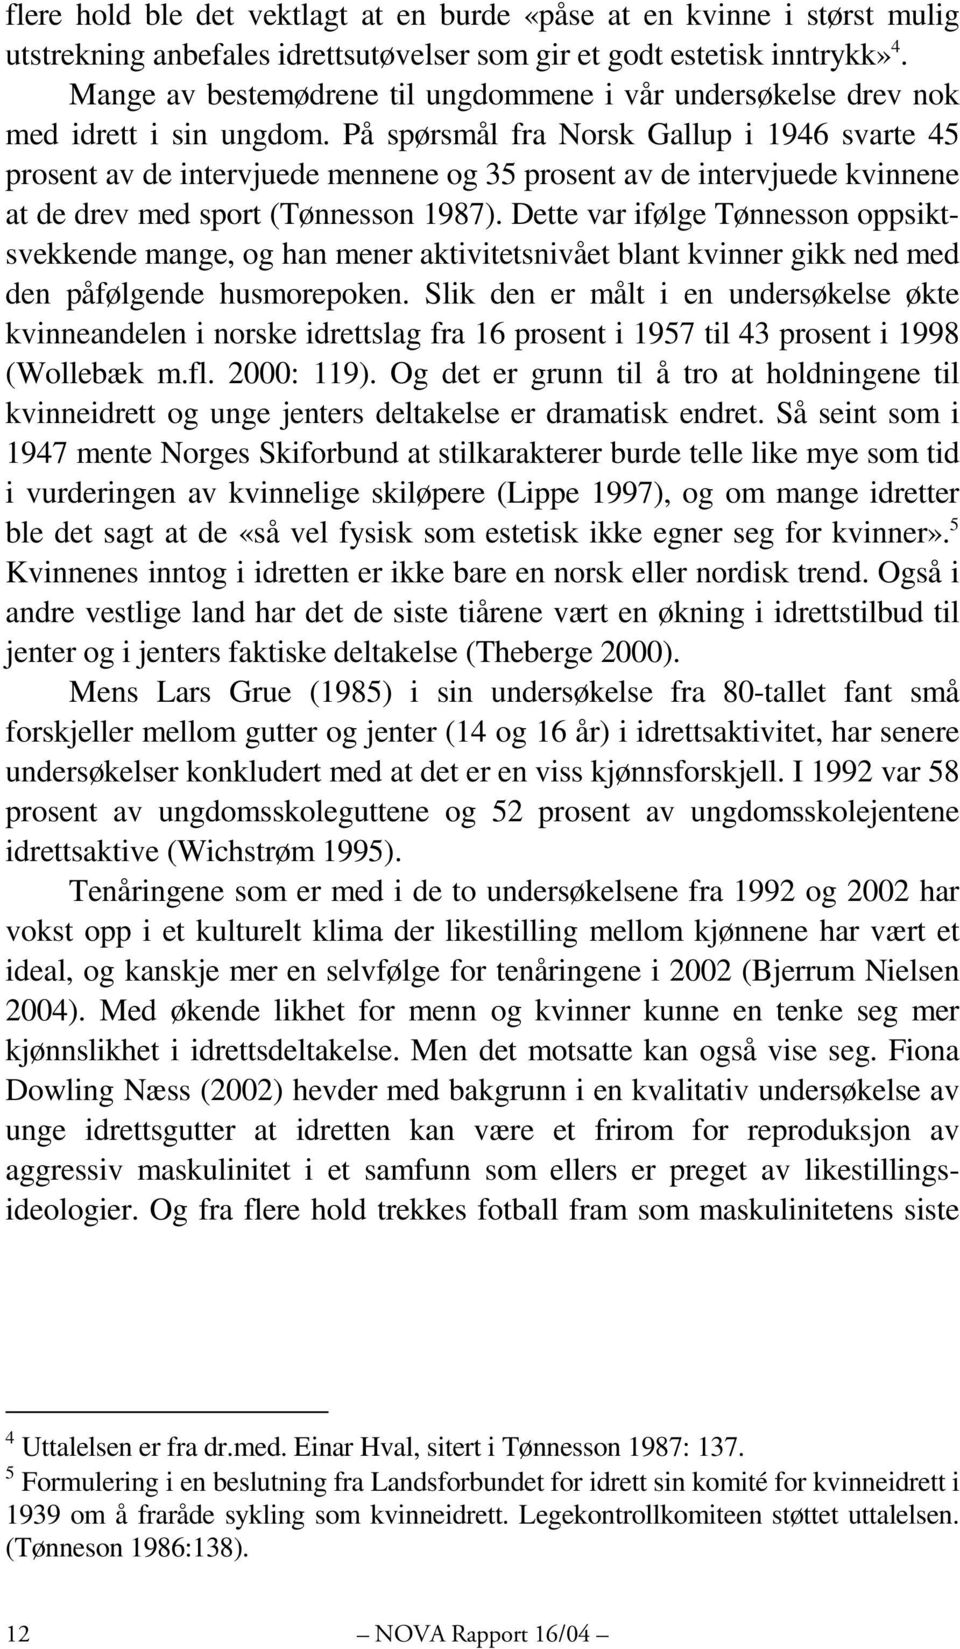 På spørsmål fra Norsk Gallup i 1946 svarte 45 prosent av de intervjuede mennene og 35 prosent av de intervjuede kvinnene at de drev med sport (Tønnesson 1987).